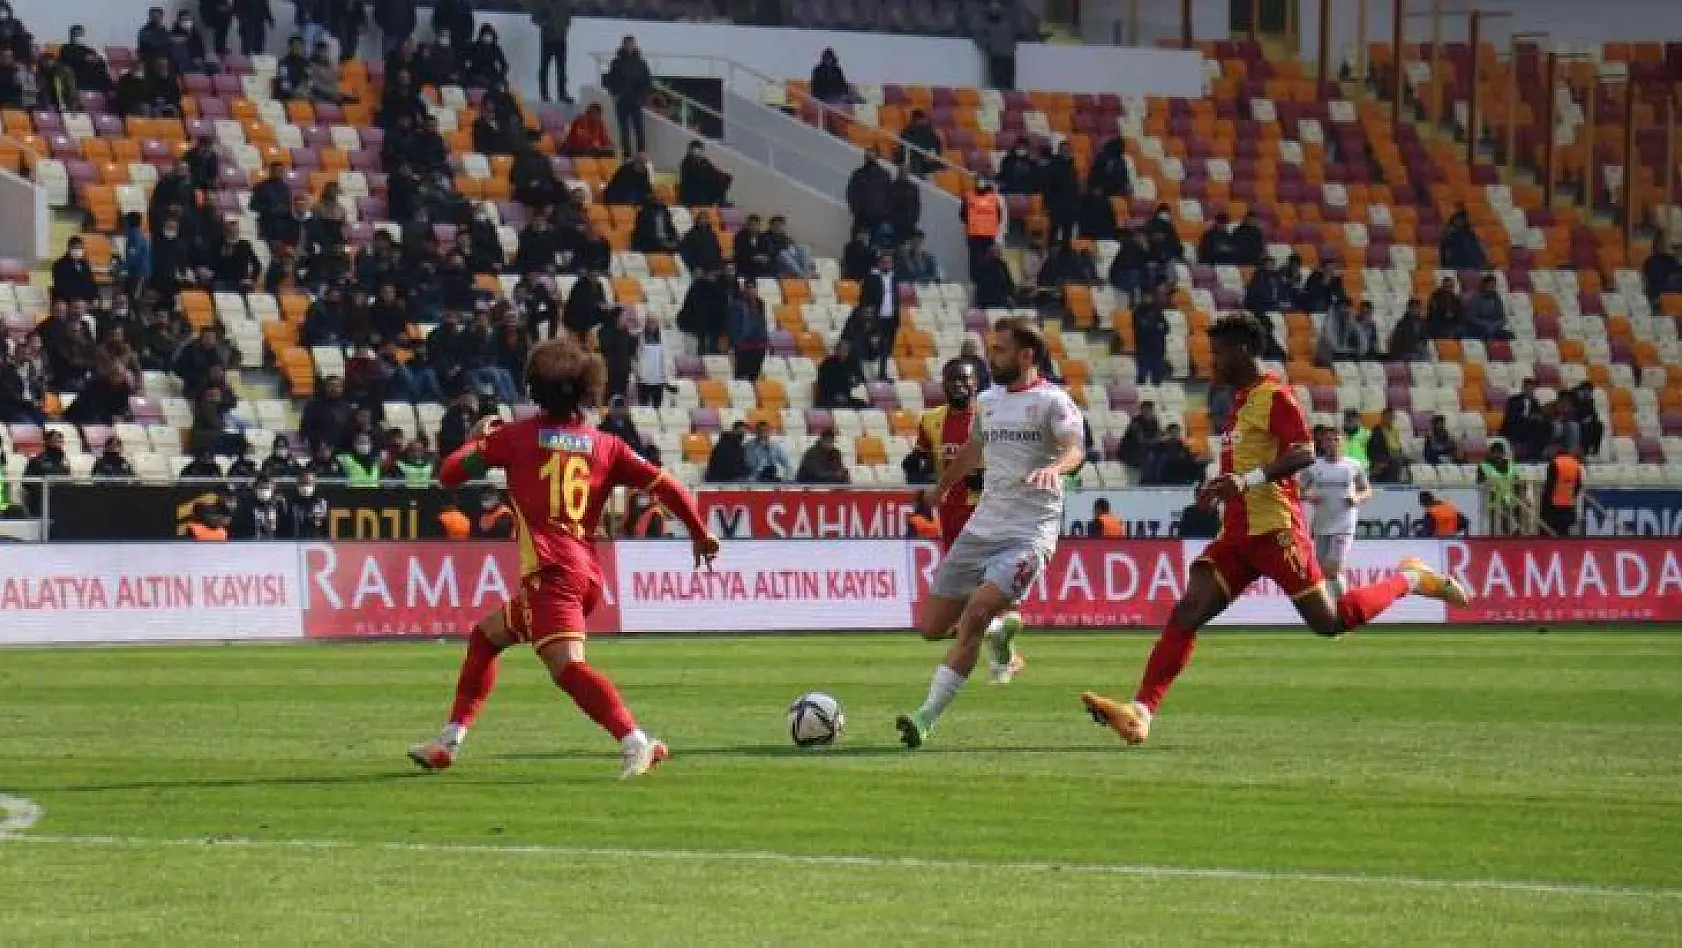 Spor Toto Süper Lig: Yeni Malatyaspor: 1 - Antalyaspor: 2 (Maç sonucu)